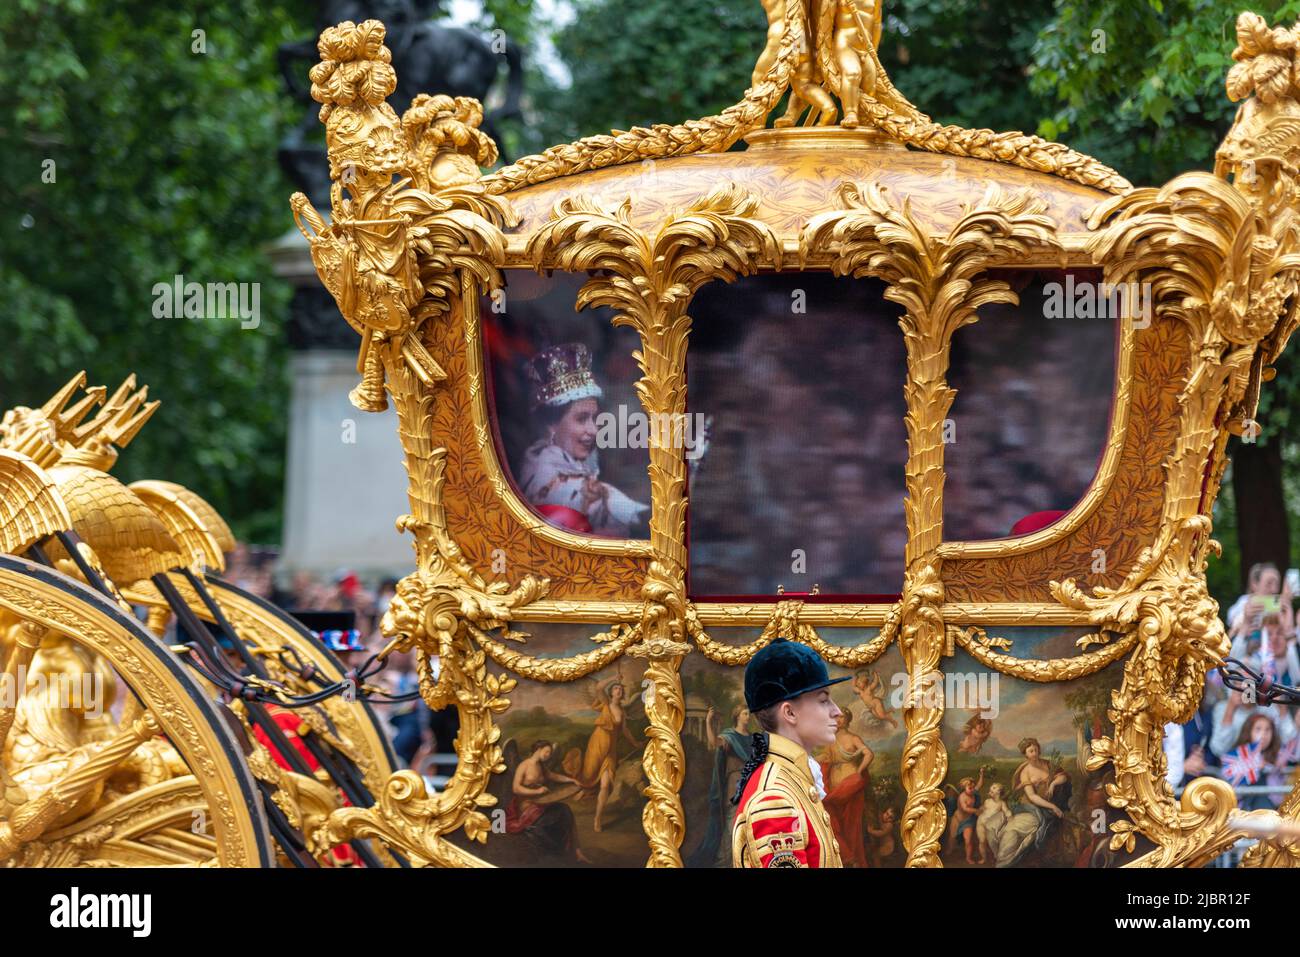 Gold State Coach bei der Parade der Queen's Platinum Jubilee Pageant in der Mall, London, Großbritannien. Königin Elizabeth II Krönungswagen mit Hologramm-Bild Stockfoto